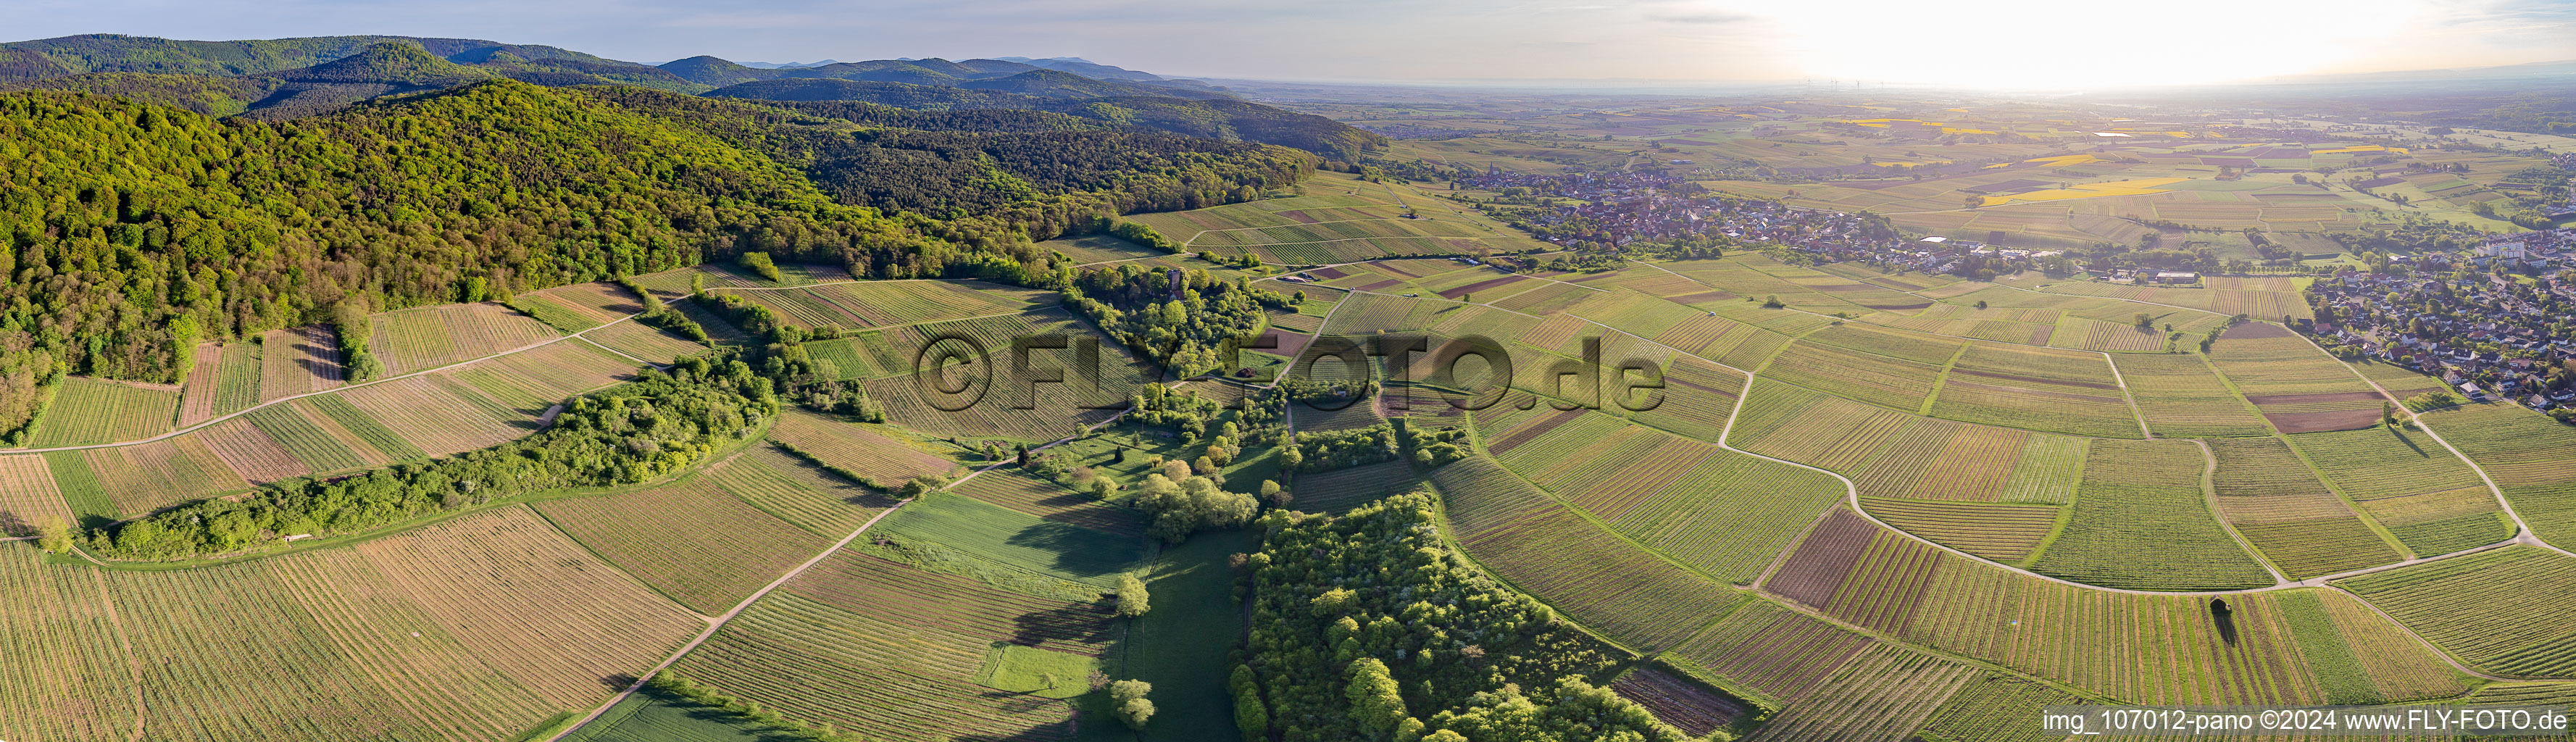 Vue aérienne de Panorama - paysage viticole en perspective du vignoble de Sonnenberg à Wissembourg dans le département Bas Rhin, France